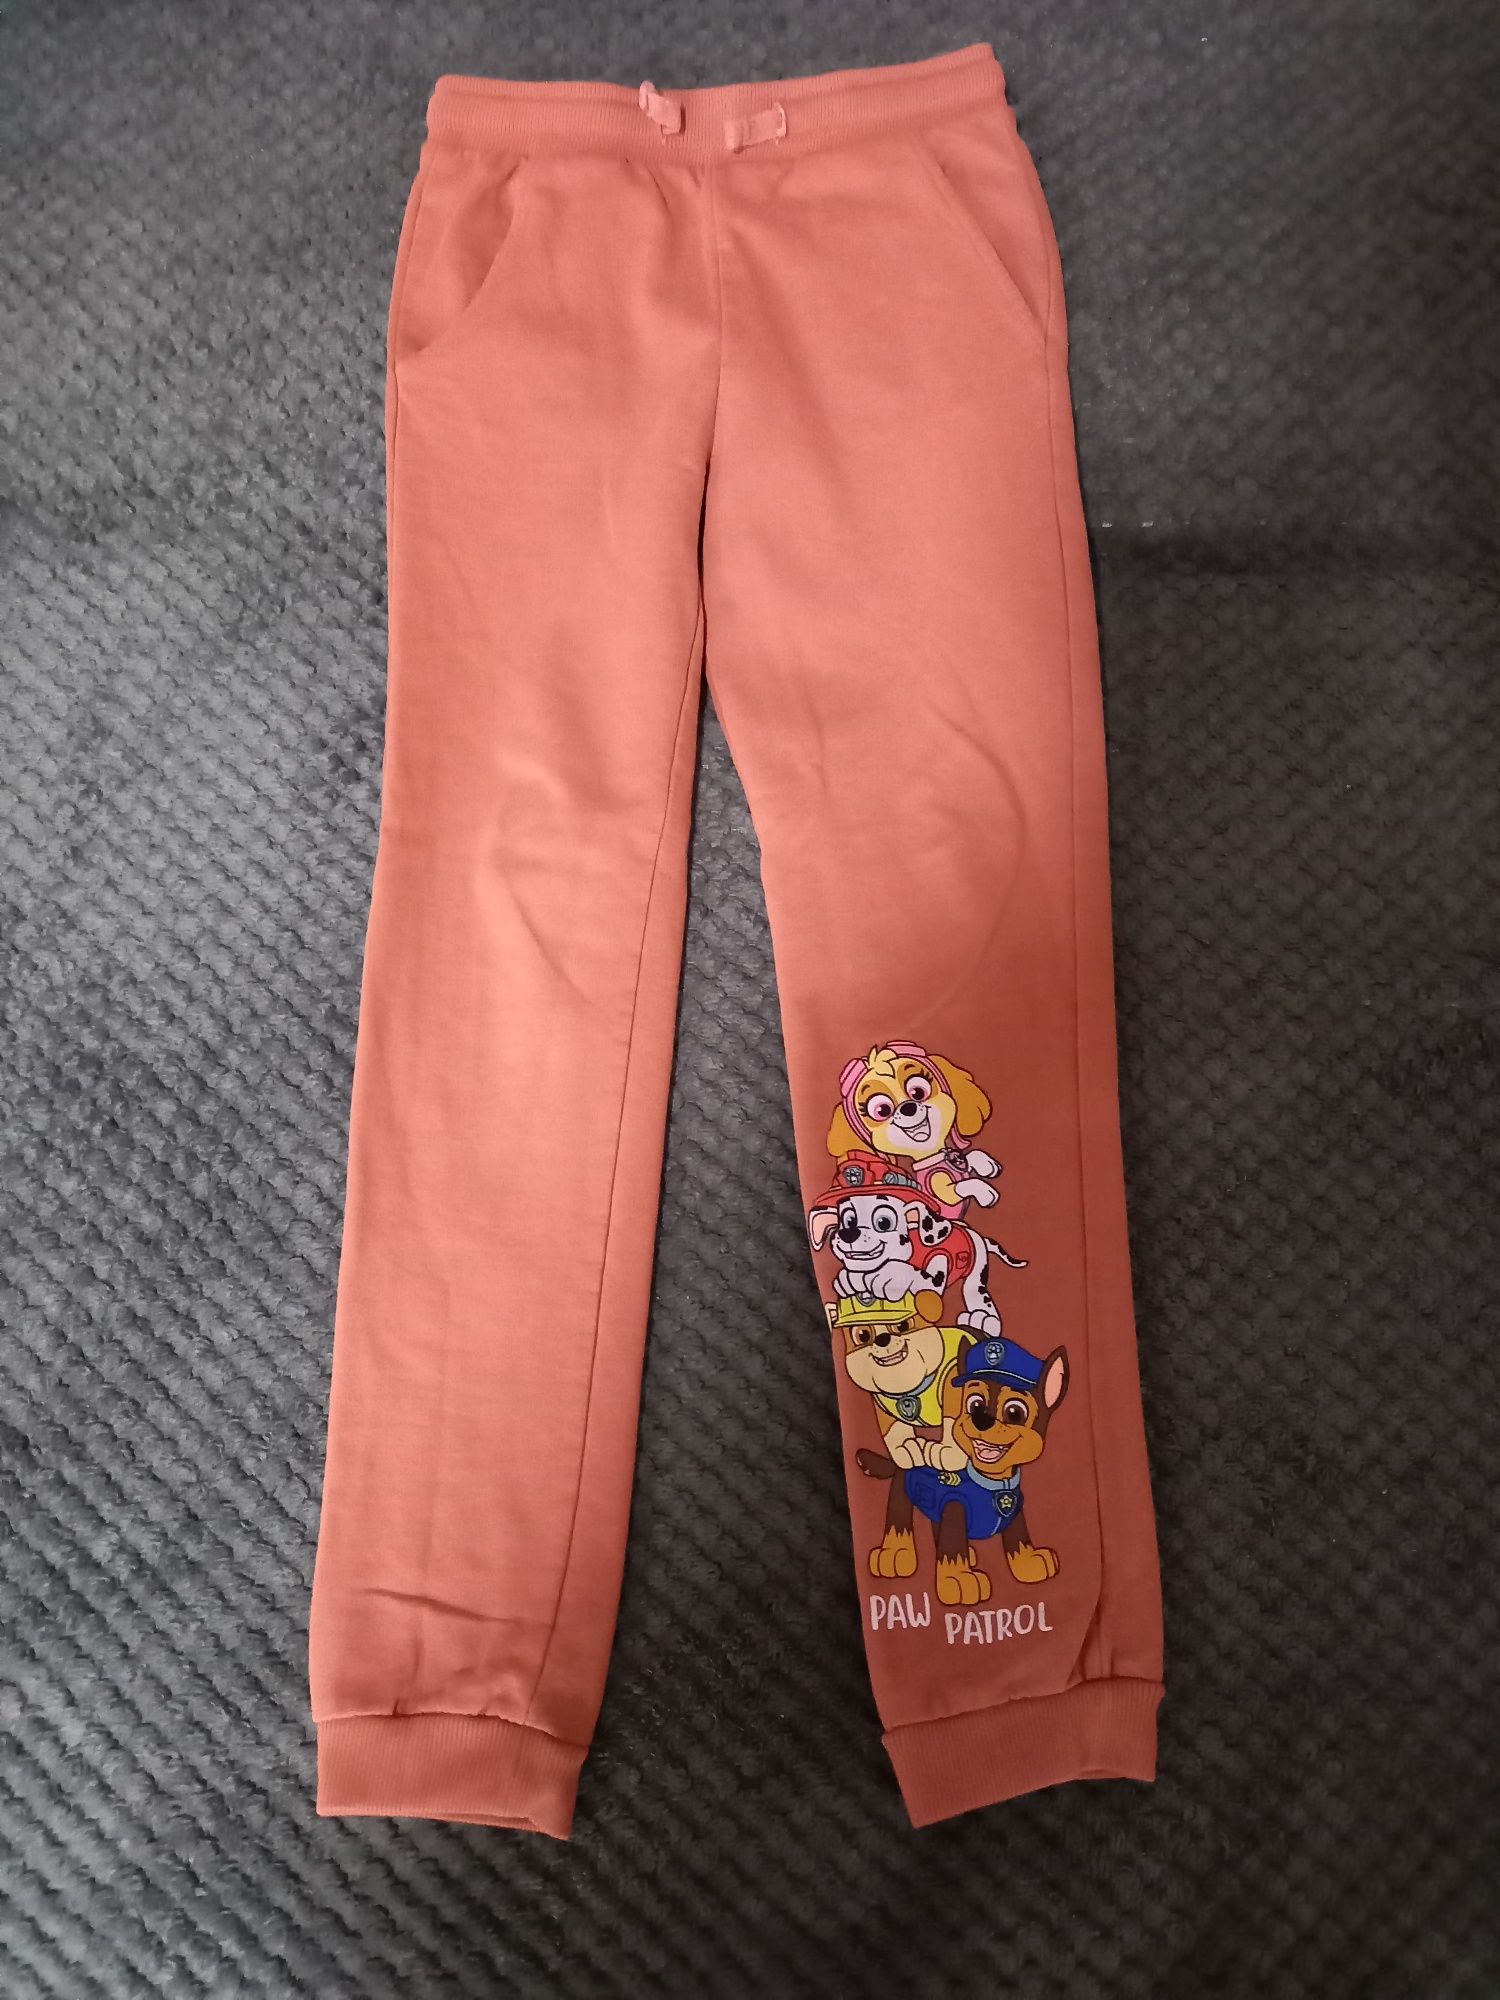 Spodnie dresowe Psi Patrol Nickelodeon rozmiar 134